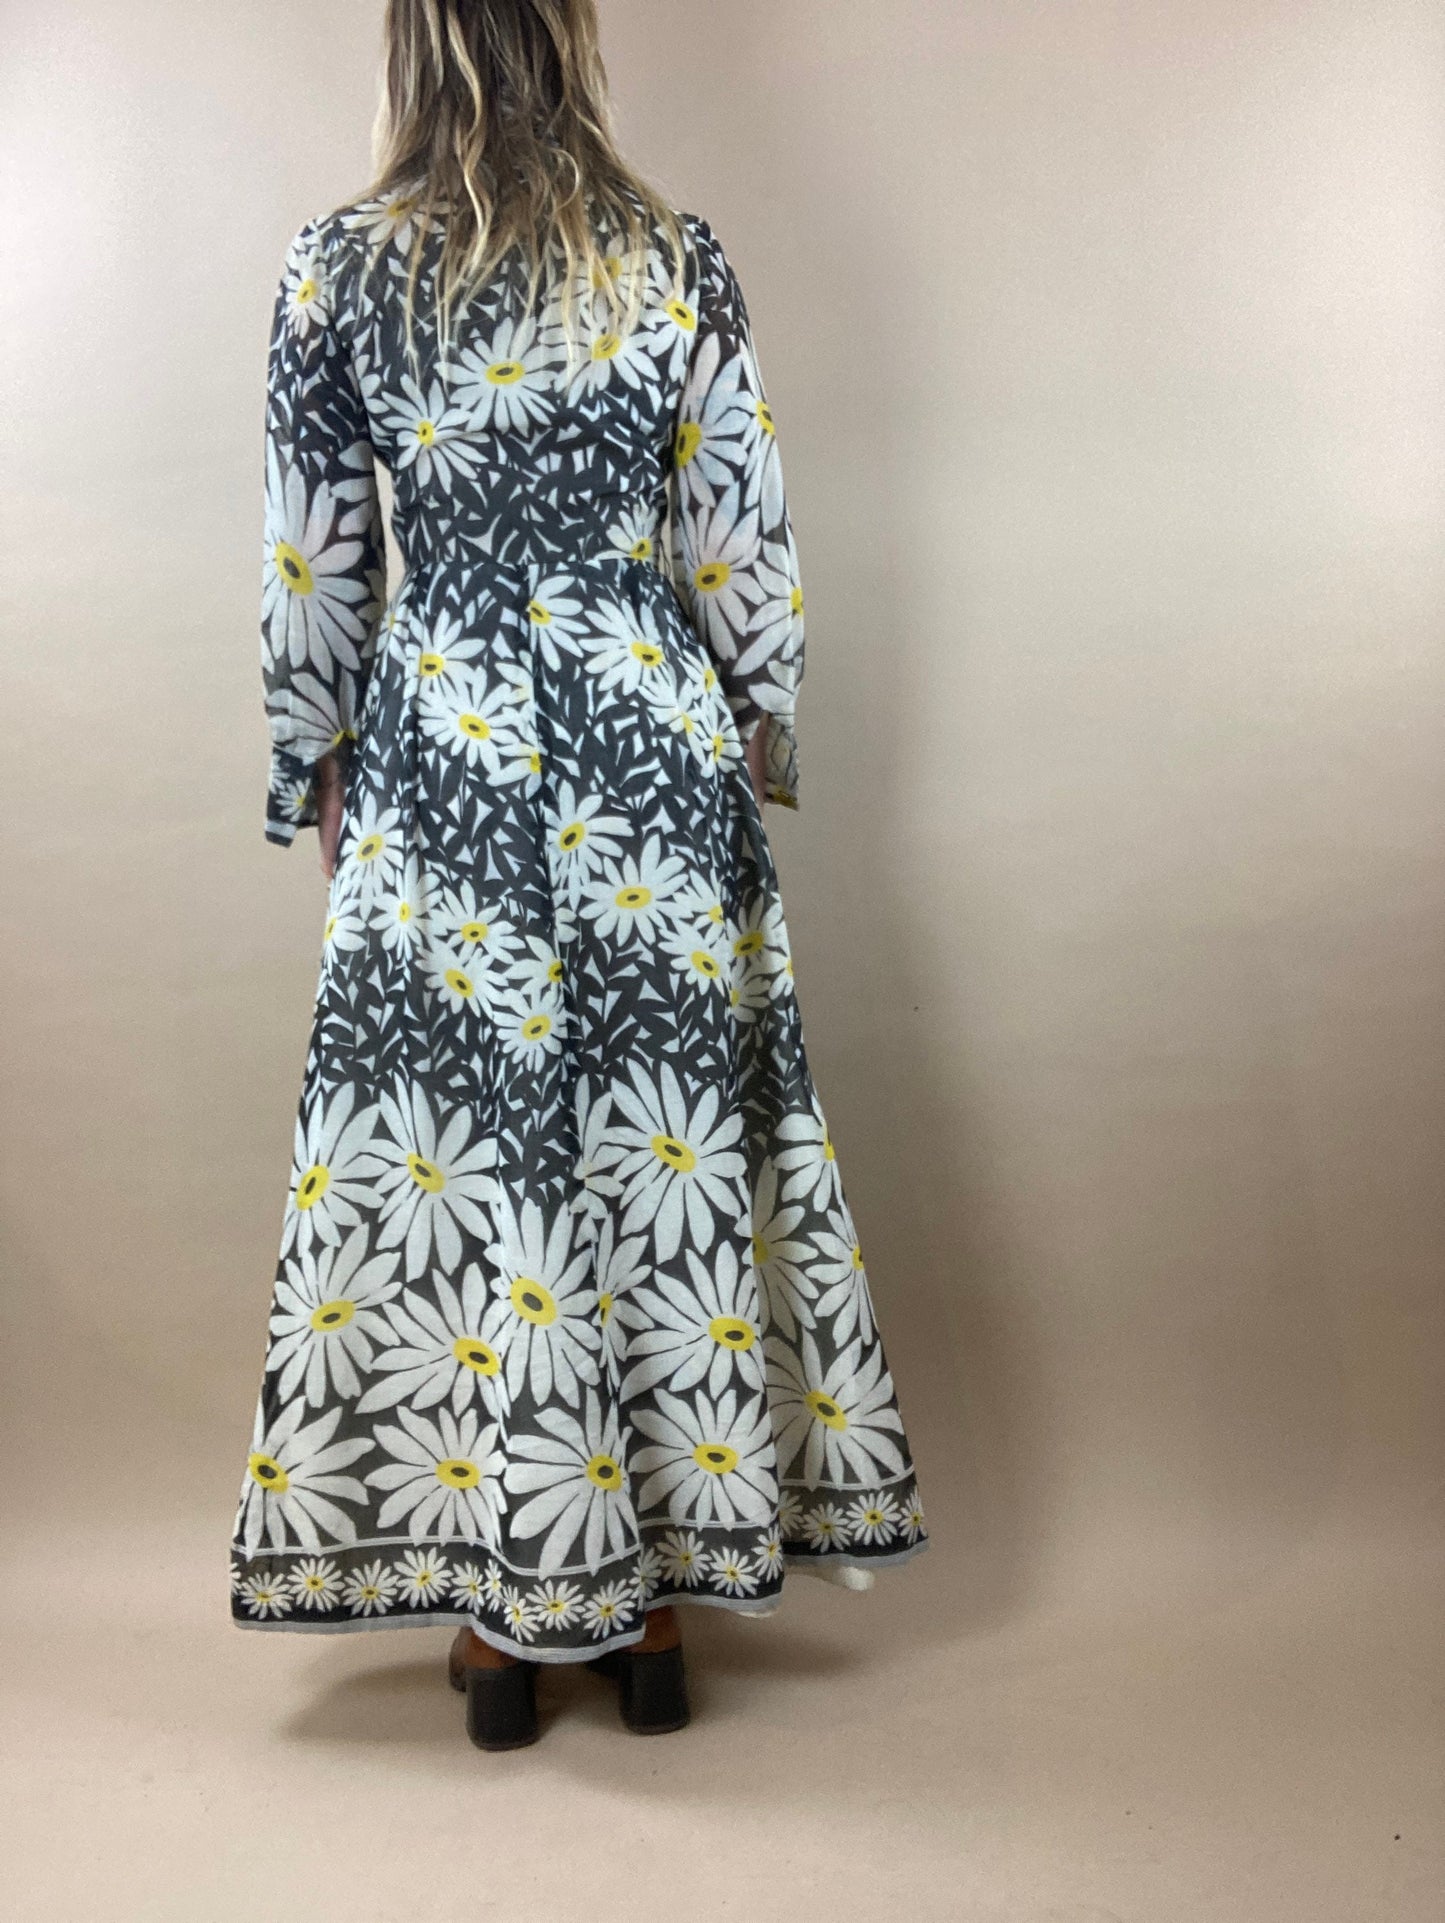 1970s Daisy Print Collared Maxi Dres / Vintage 70s Long Sleeve Hippie Boho Sun Dress / Small